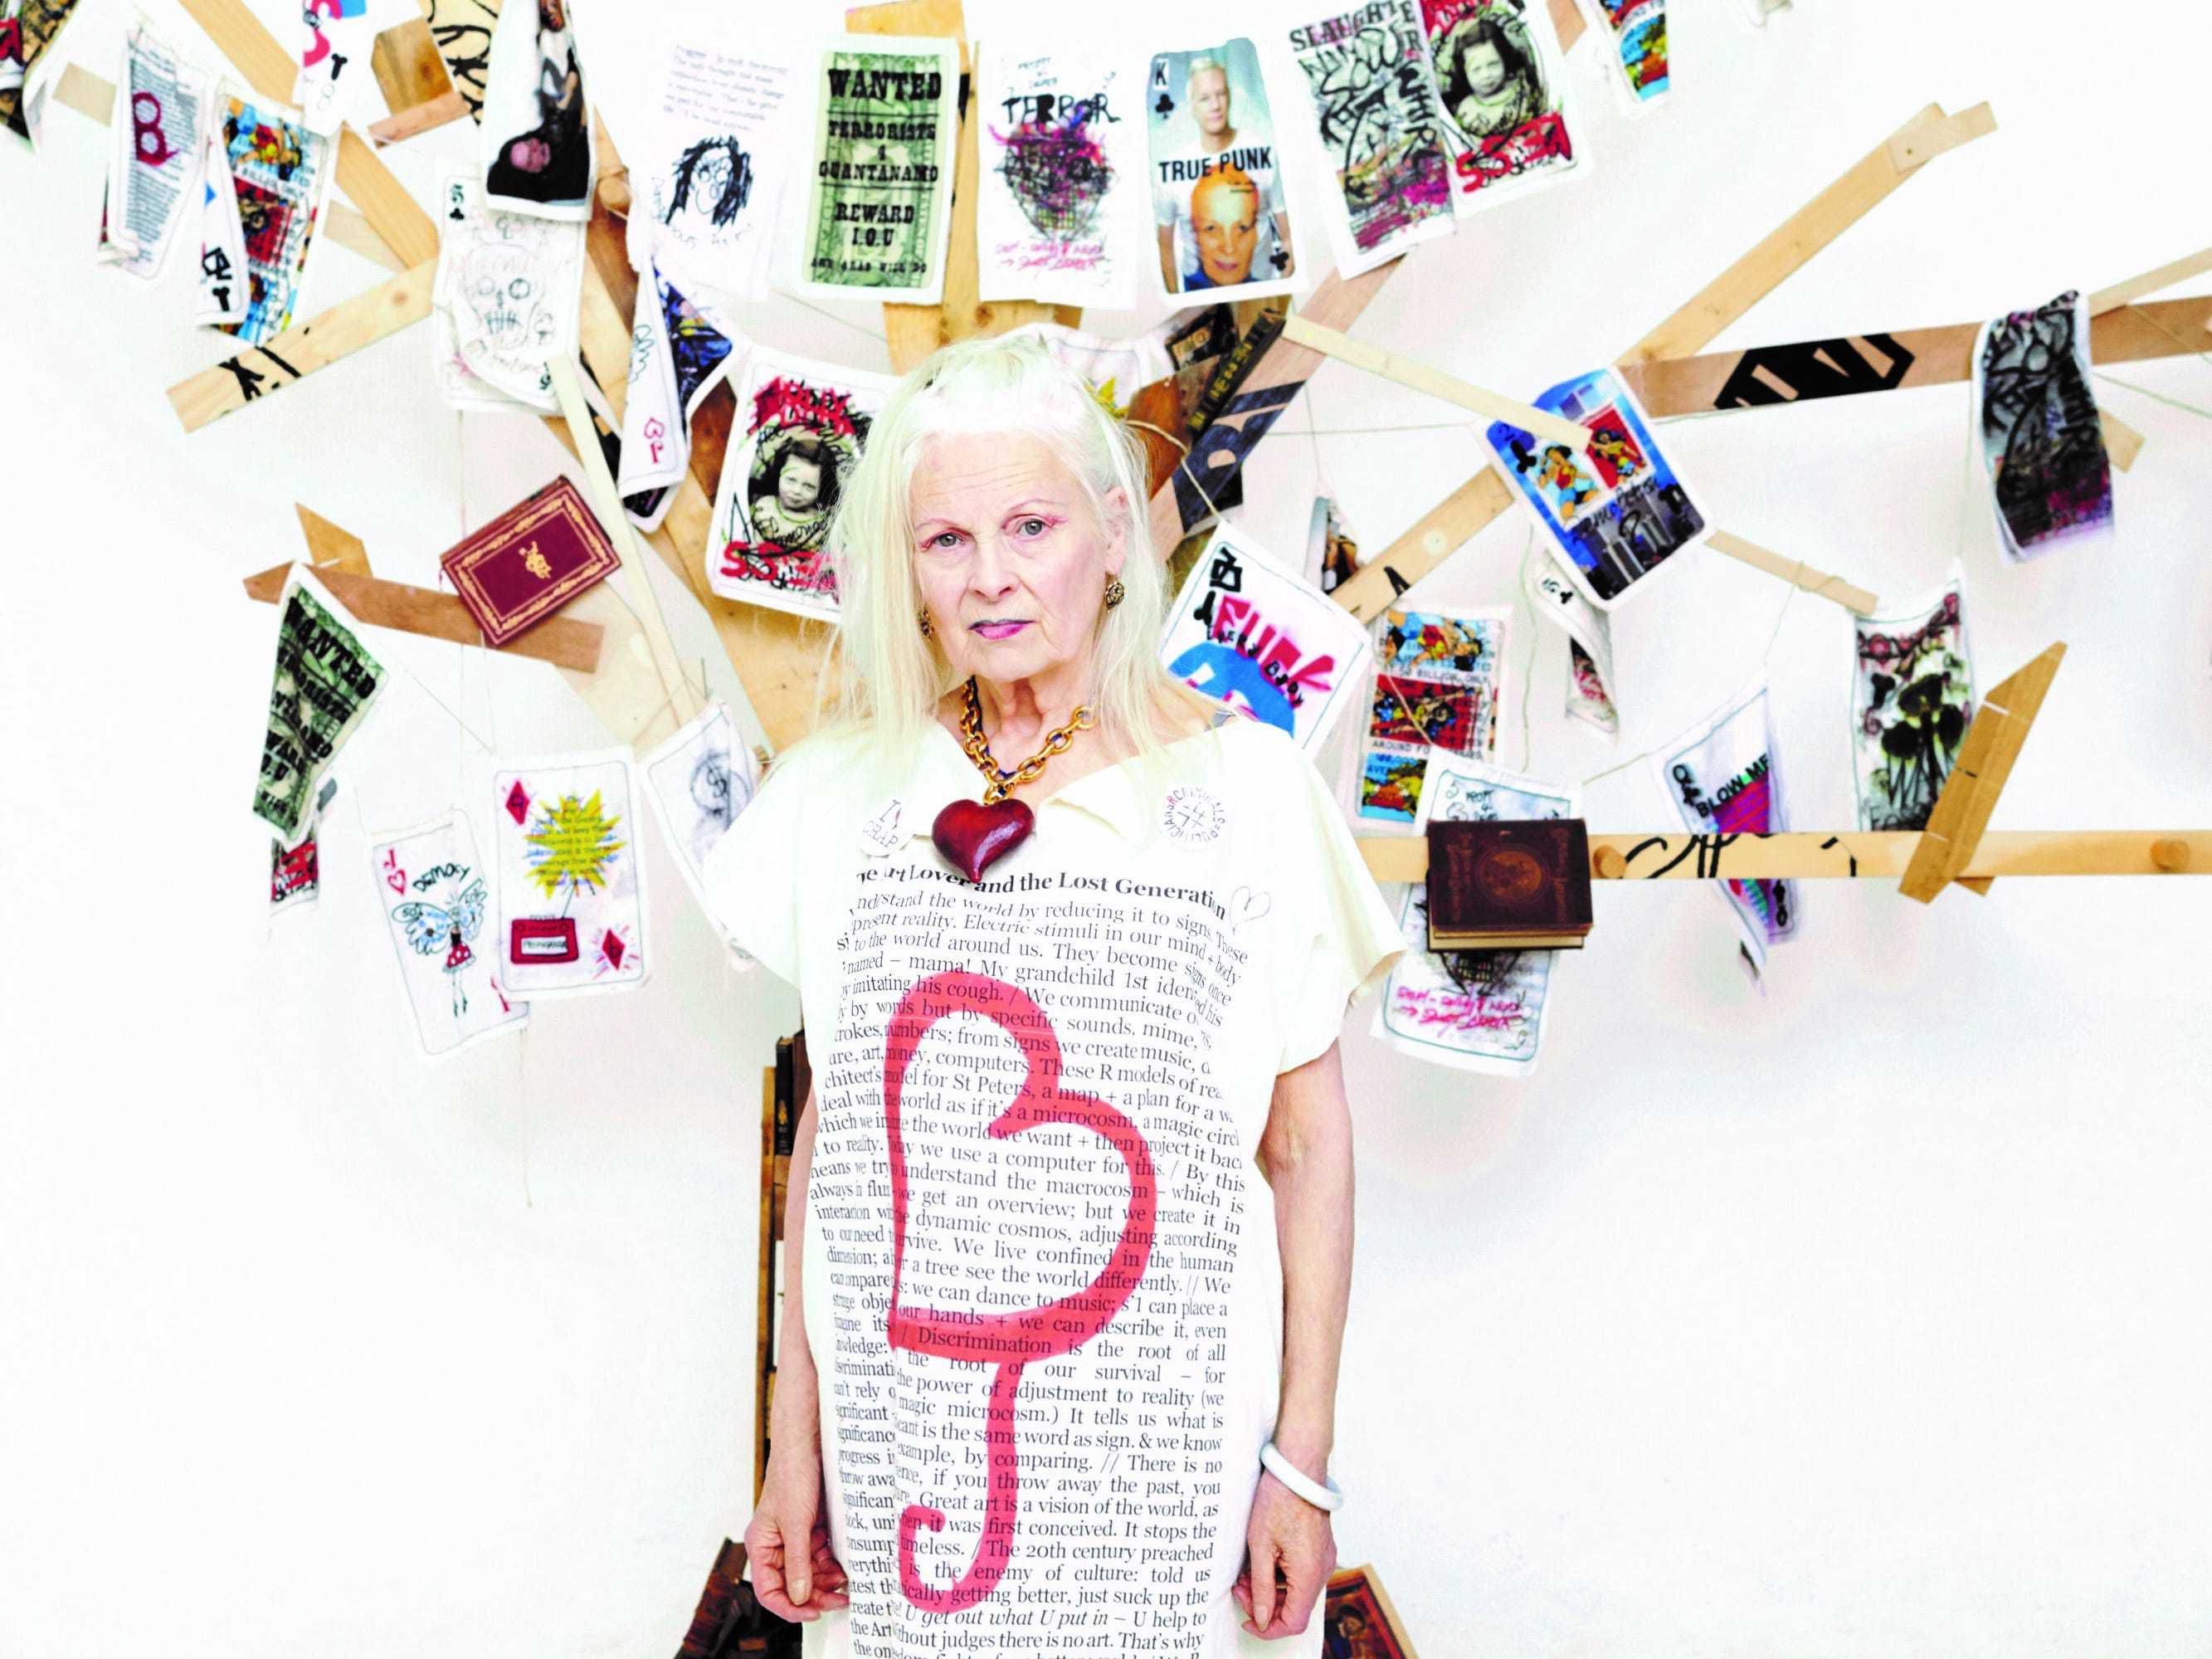 Posthumous Vivienne Westwood project raises funds for Greenpeace